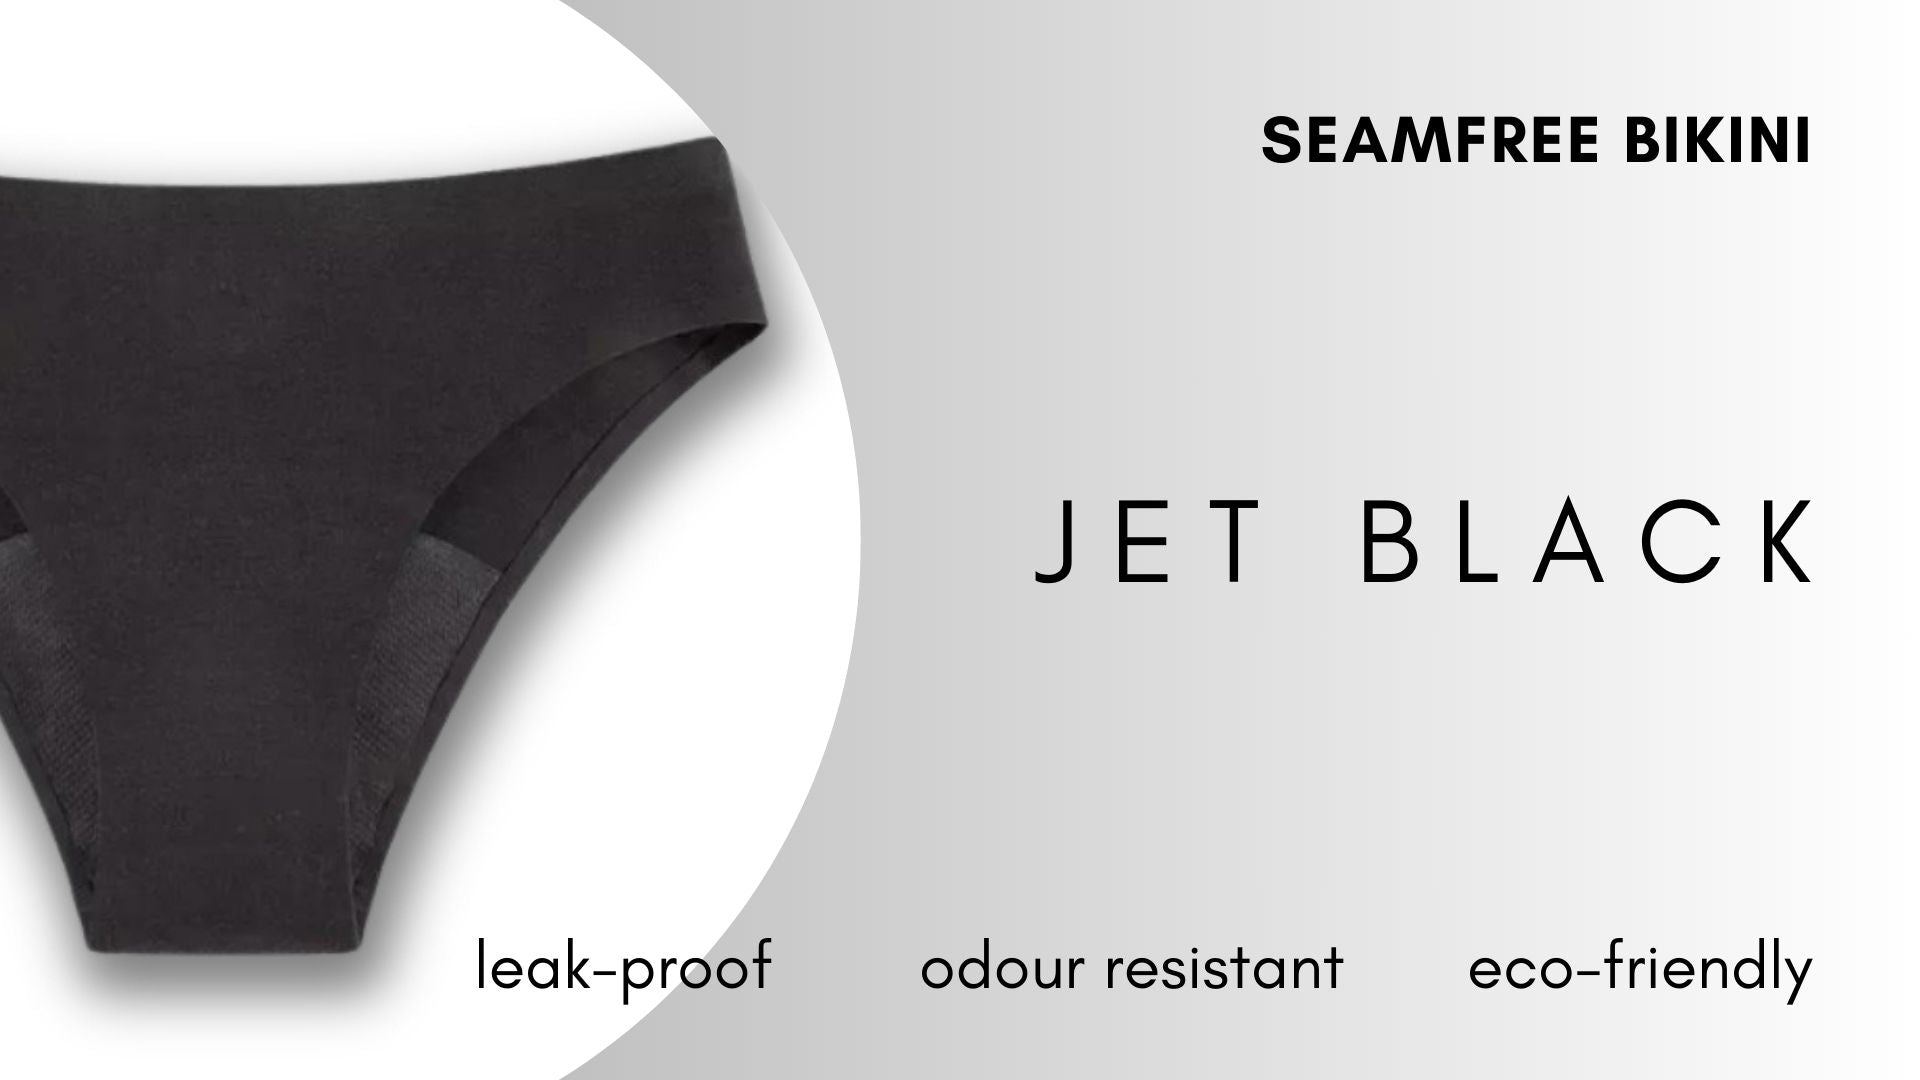 Seamfree Bikini - Jet Black Period Underwear NZ